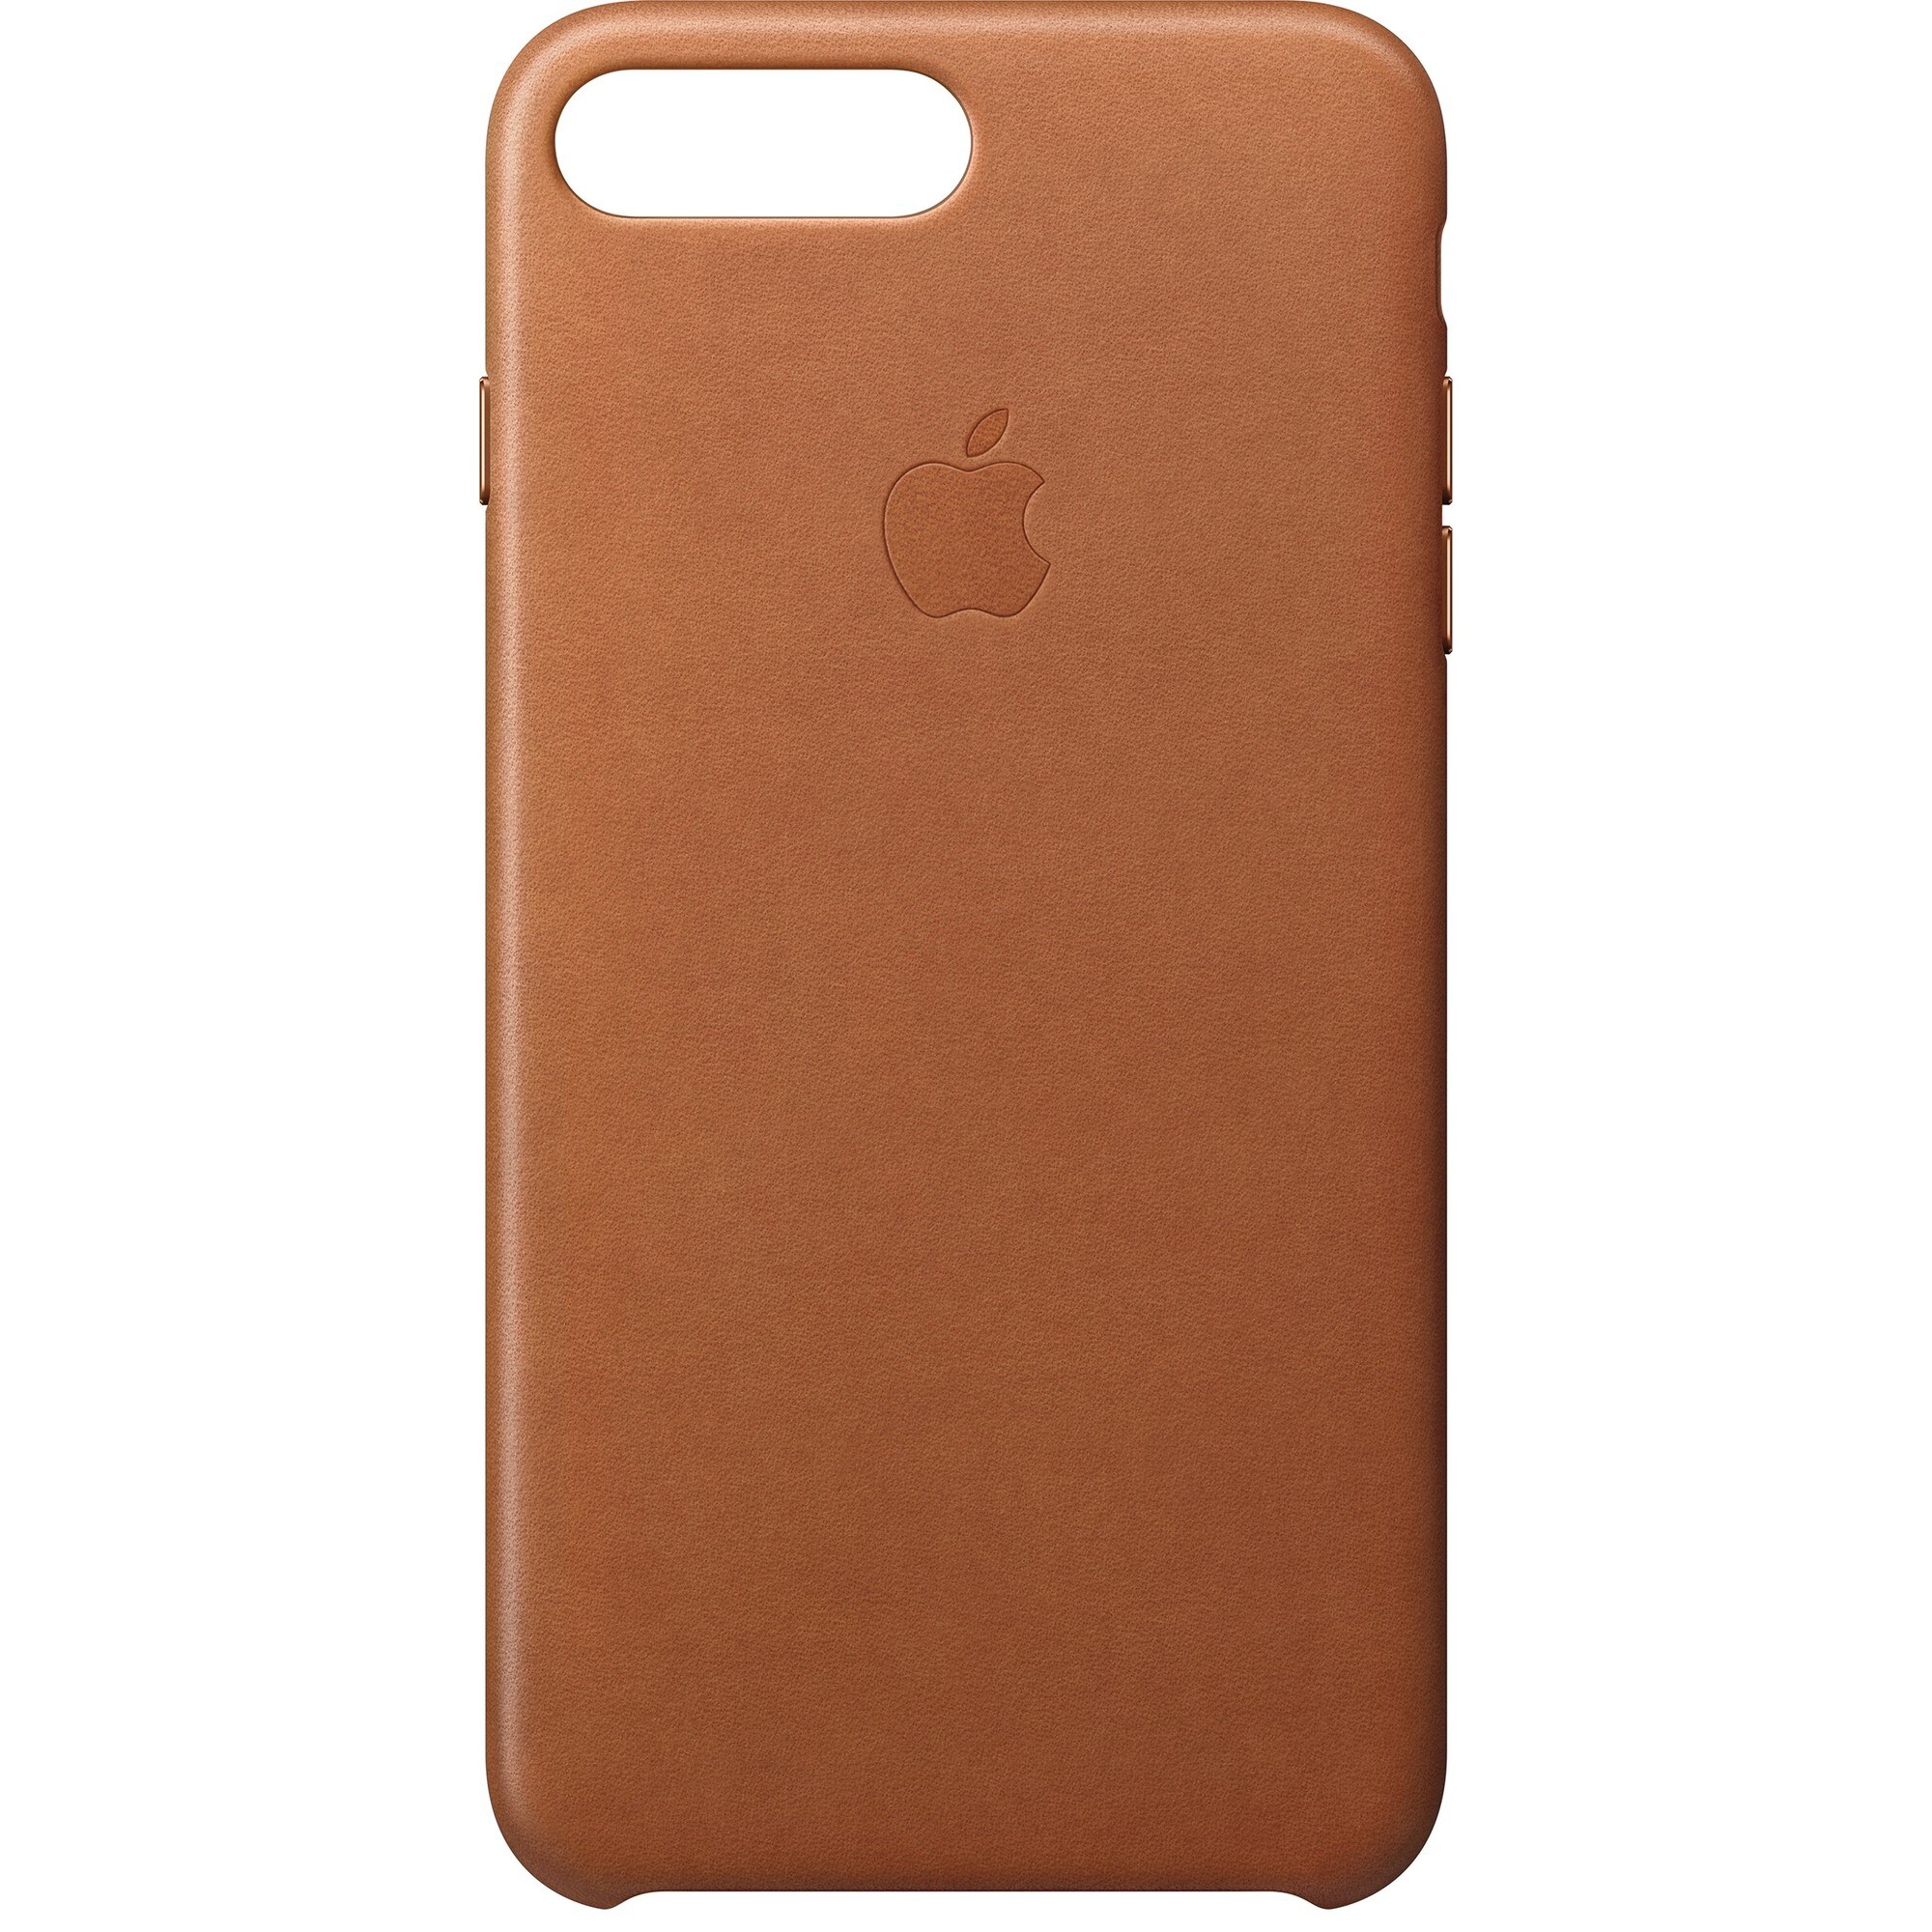 Apple iPhone 7 Plus skinndeksel (brun) - Elkjøp